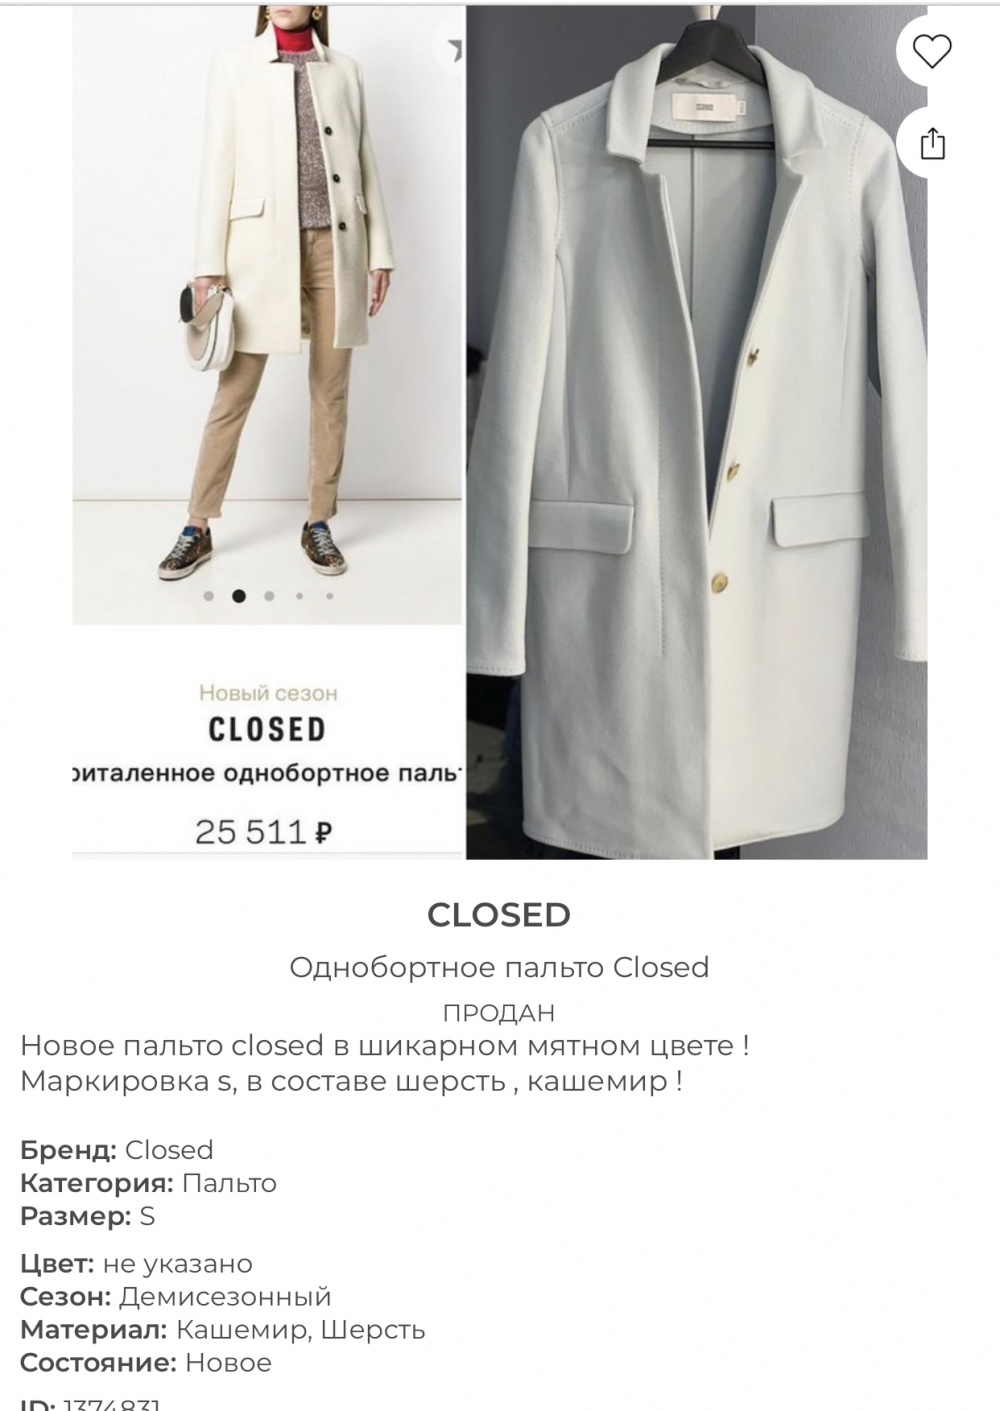 Closed пальто размер s